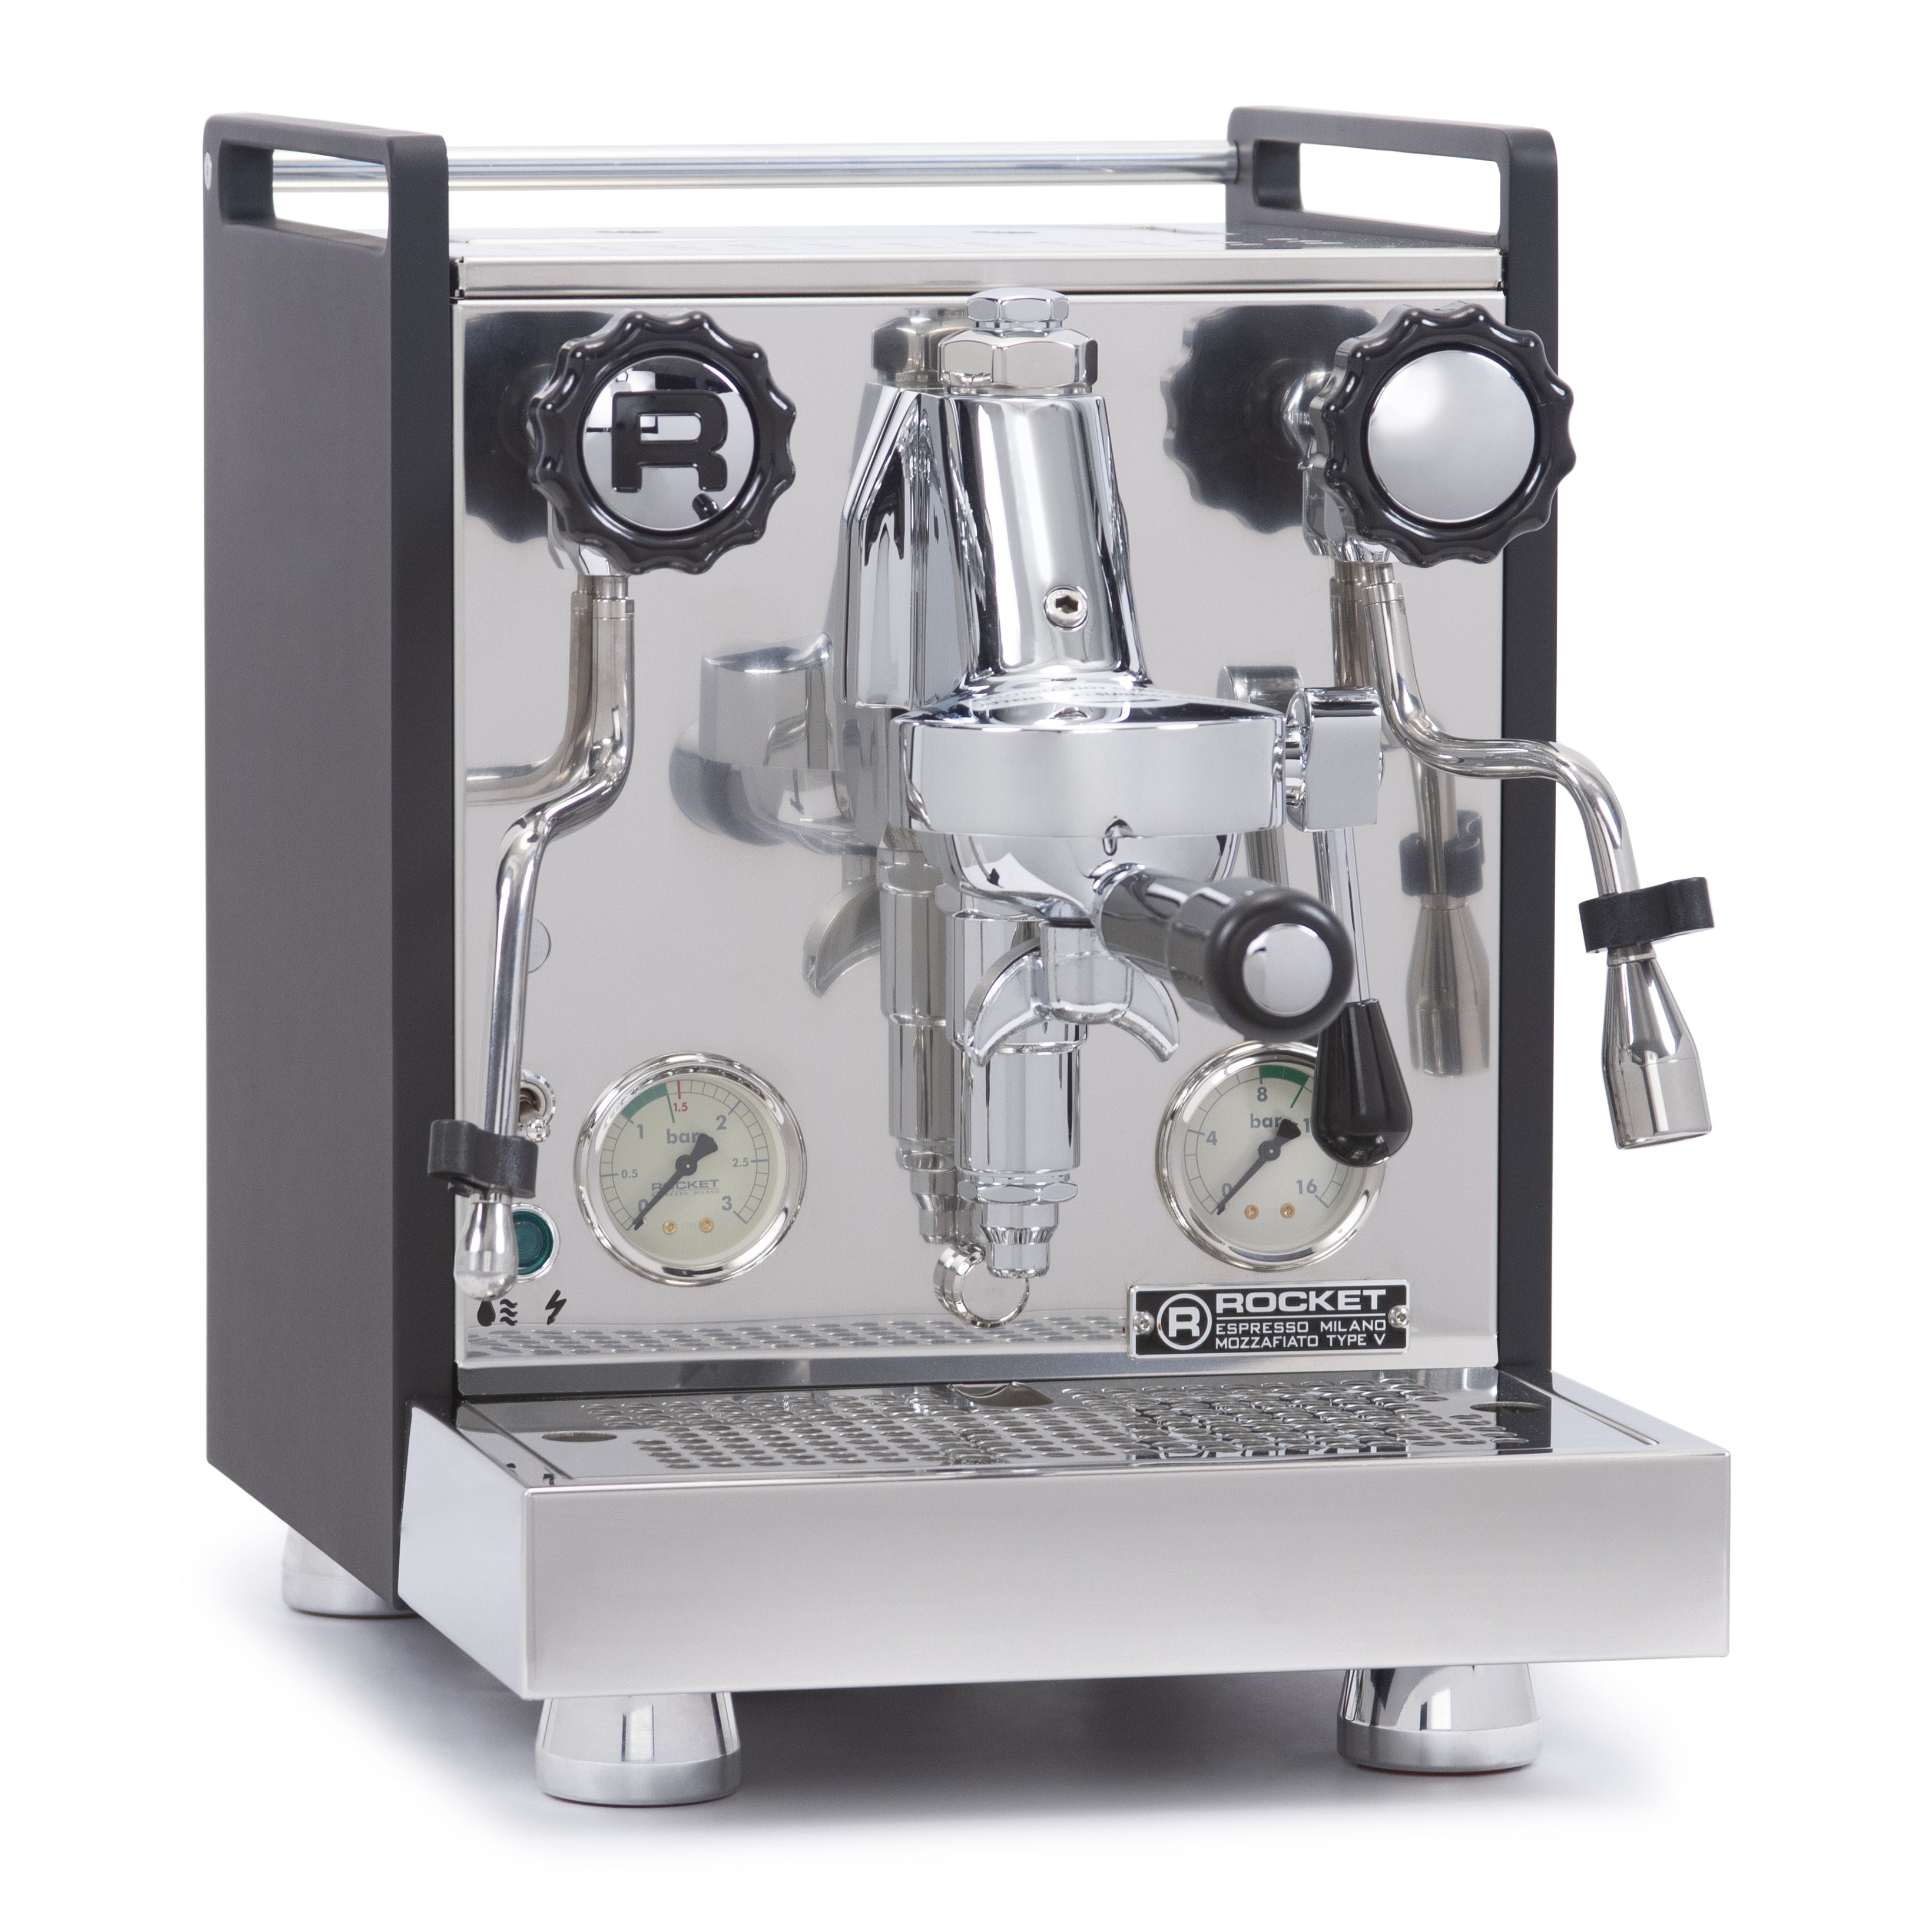 Rocket Espresso Mozzafiato Cronometro V Nera Espresso Machine 